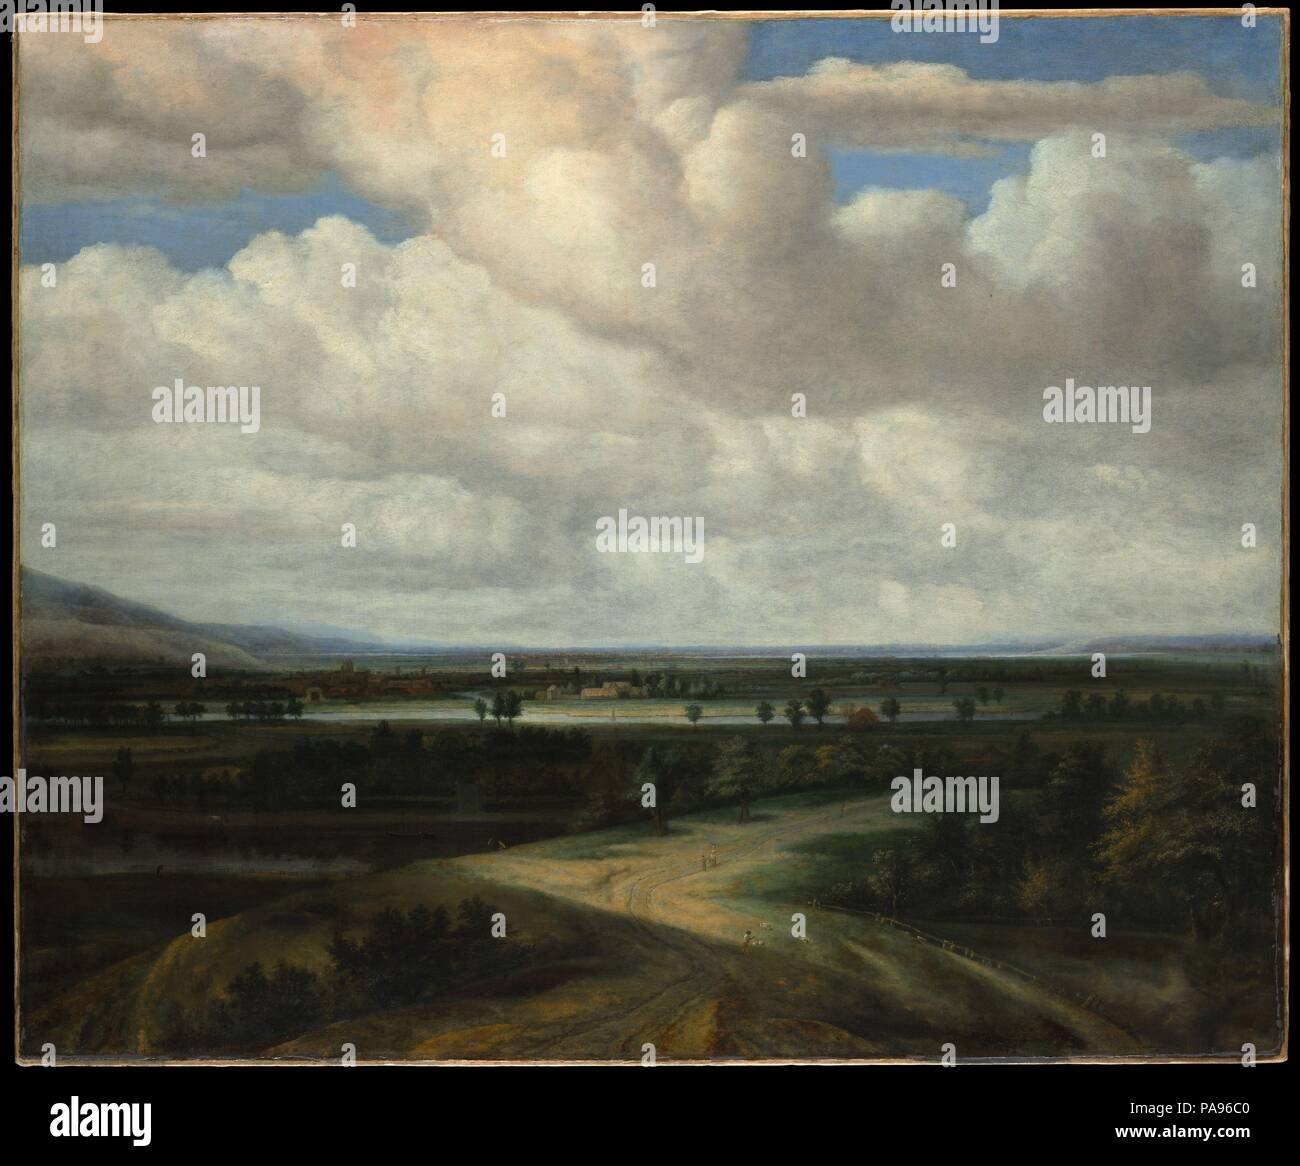 Un paysage panoramique avec une propriété de campagne. Artiste : Philips Koninck (Néerlandais, Amsterdam Amsterdam 1619-1688). Dimensions : 56 3/8 x 68 1/4 in. (143,2 x 173,4 cm). Date : ca. 1649. Cet ambitieux travail est une des premières compositions de l'artiste sur une grande échelle. Le premier plan est un peu maladroitement, mais la plaine ensoleillée dans la distance semble annoncer la maturité de Koninck style de peinture de paysage panoramique. Paysage hollandais plus tôt et les peintres avaient interrogés d'une vue panoramique sur la terre et le ciel, mais Koninck (qui savait bien Rembrandt) introduit des contrastes de lumière et d'ombre et un Banque D'Images